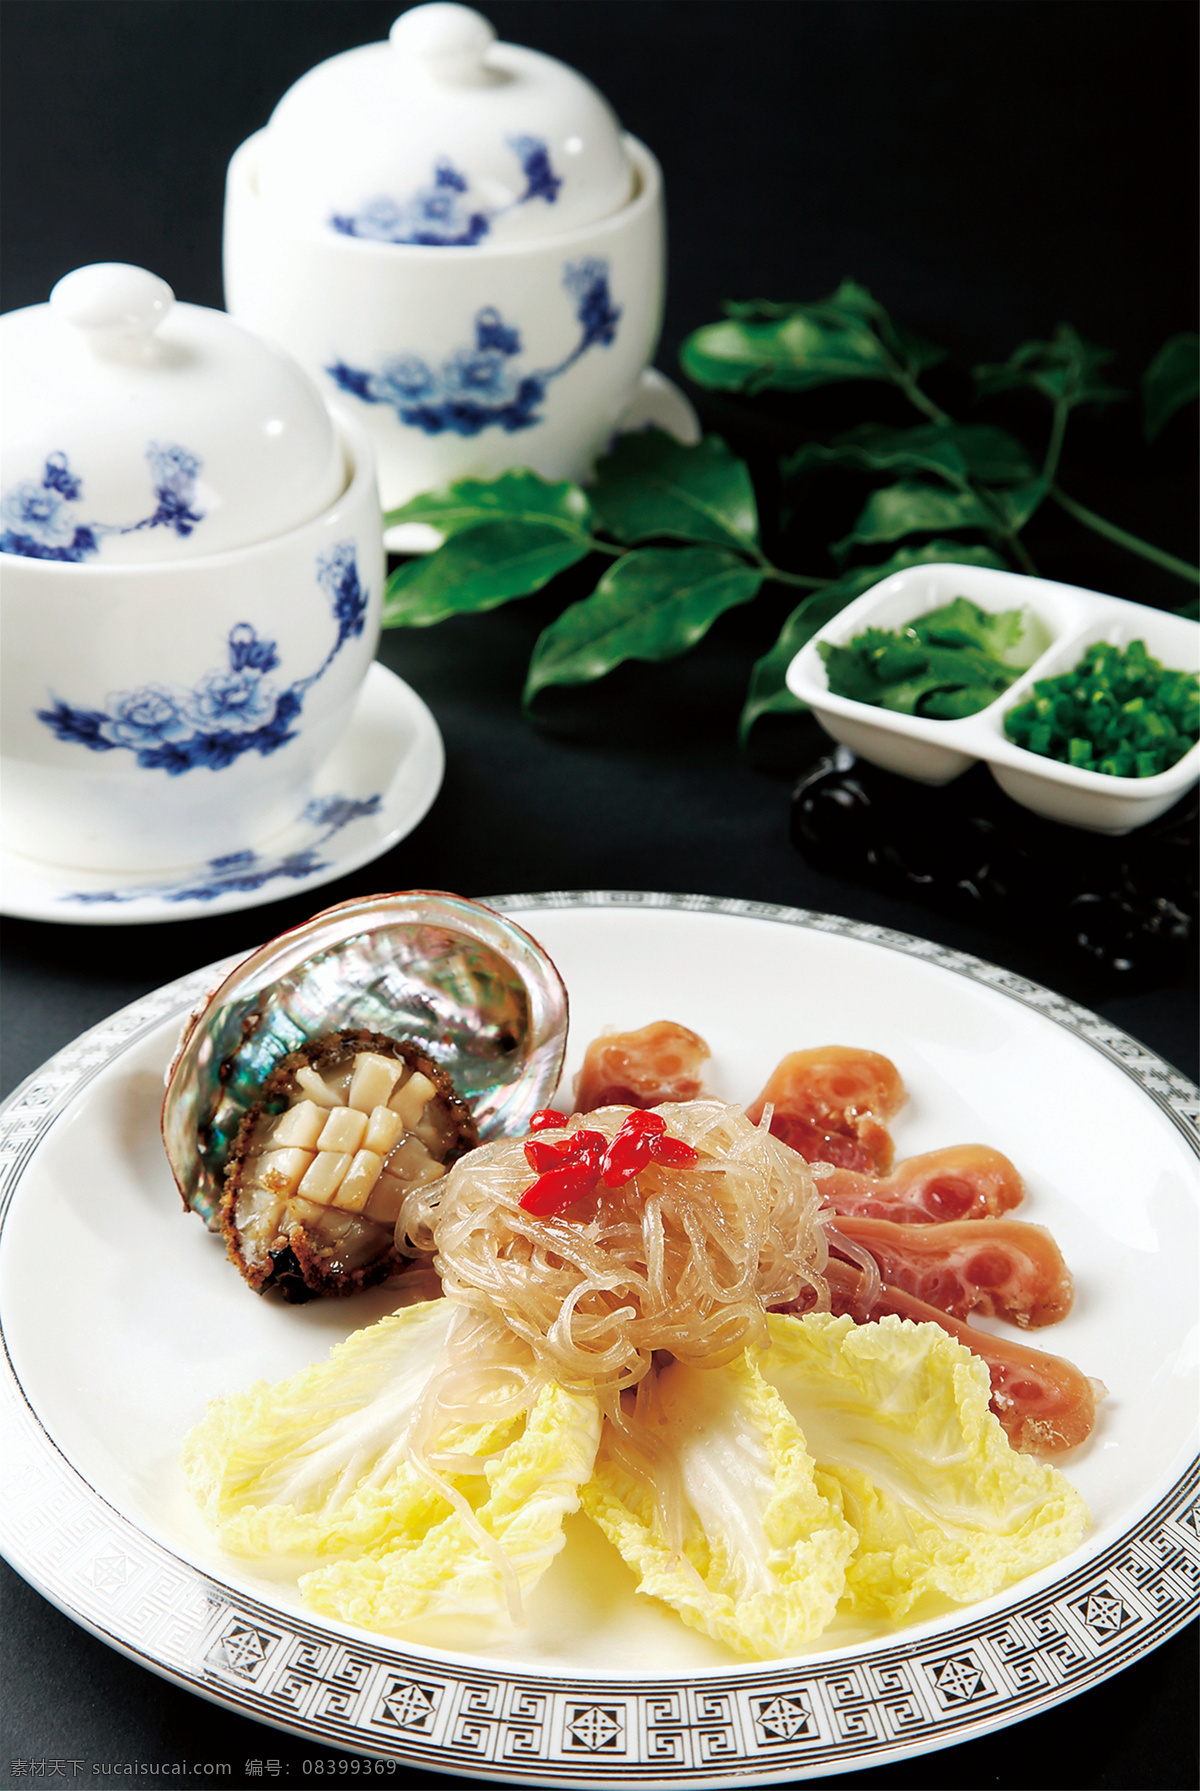 羊肉汤烩鲍鱼 美食 传统美食 餐饮美食 高清菜谱用图